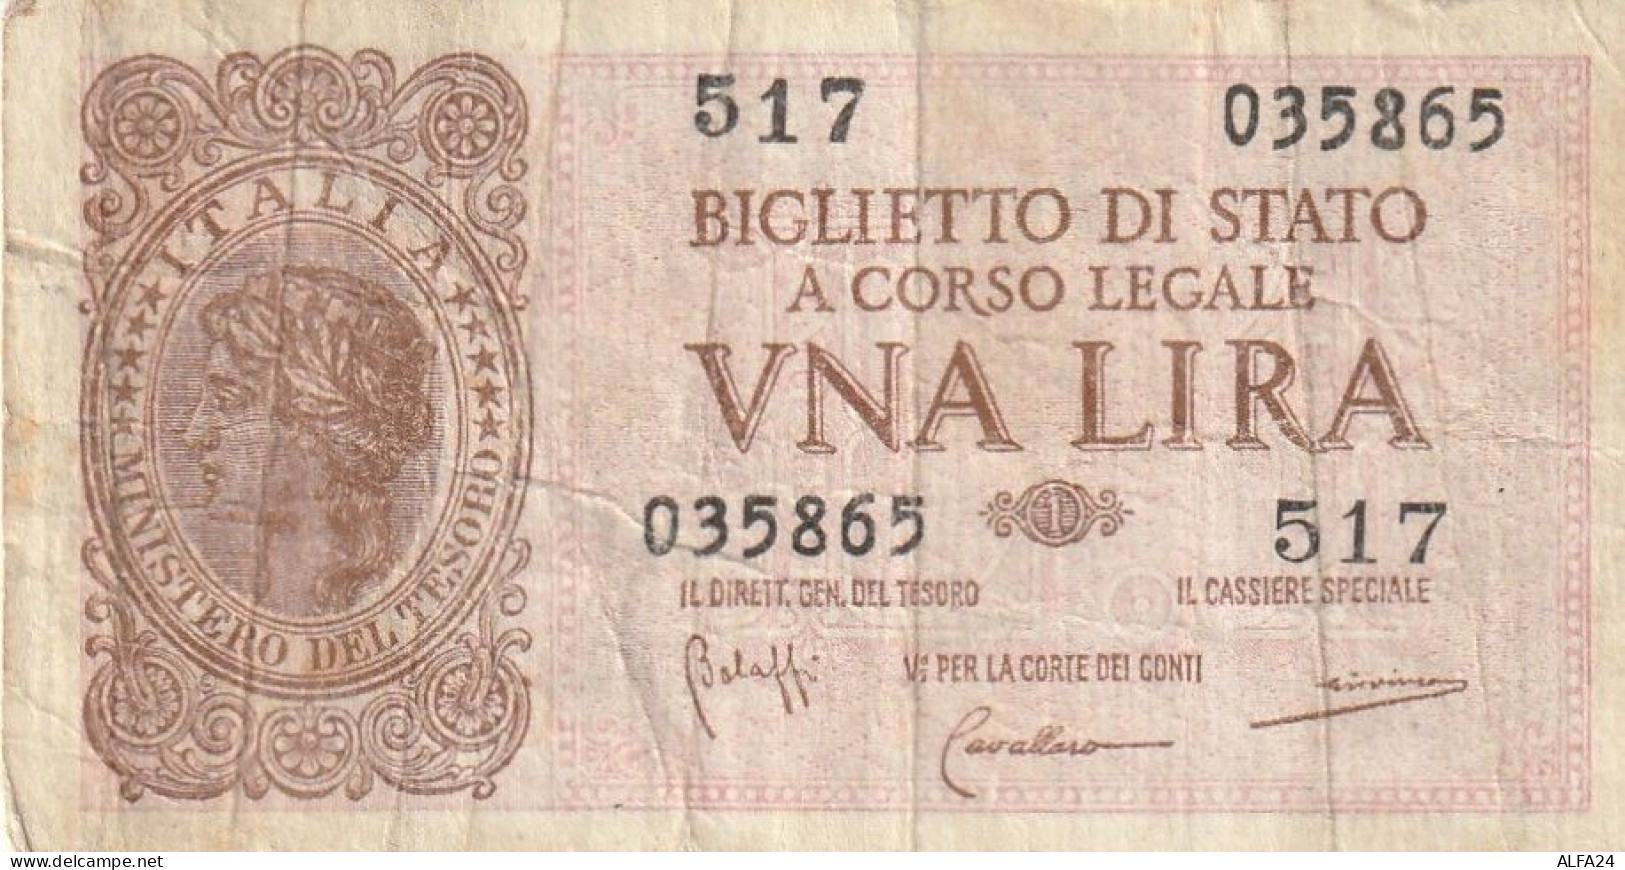 BANCONOTA BIGLIETTO DI STATO ITALIA 1 LIRA VF  (B_362 - Italia – 1 Lira